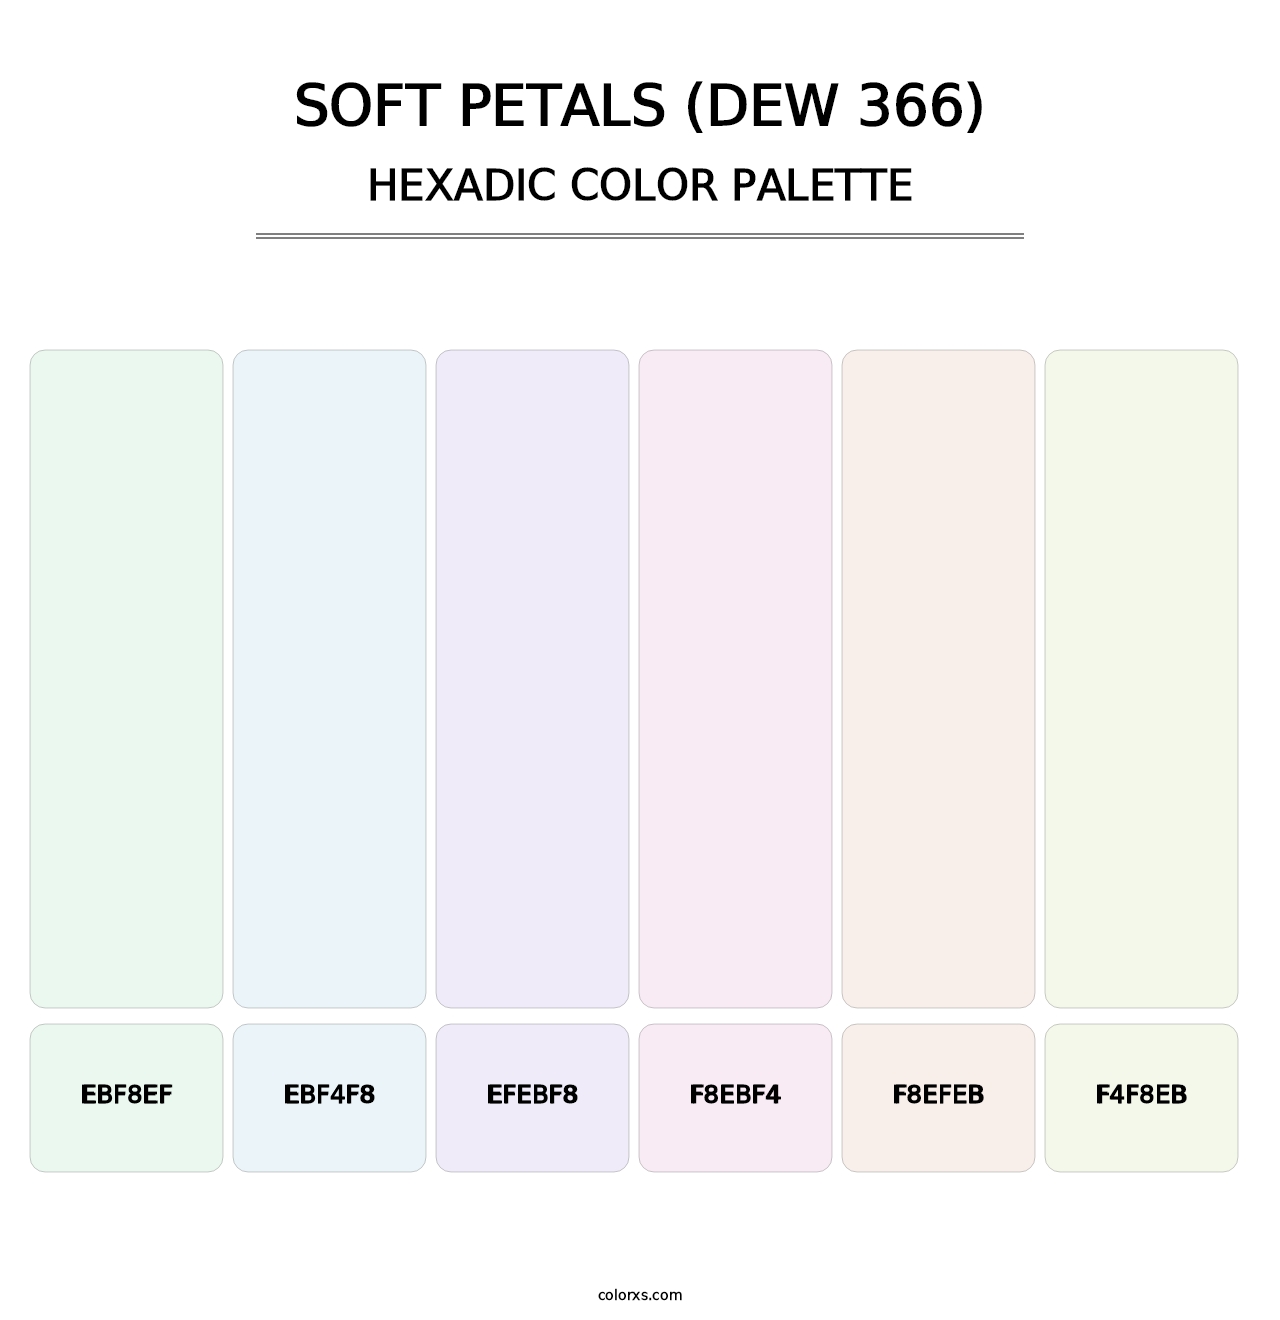 Soft Petals (DEW 366) - Hexadic Color Palette